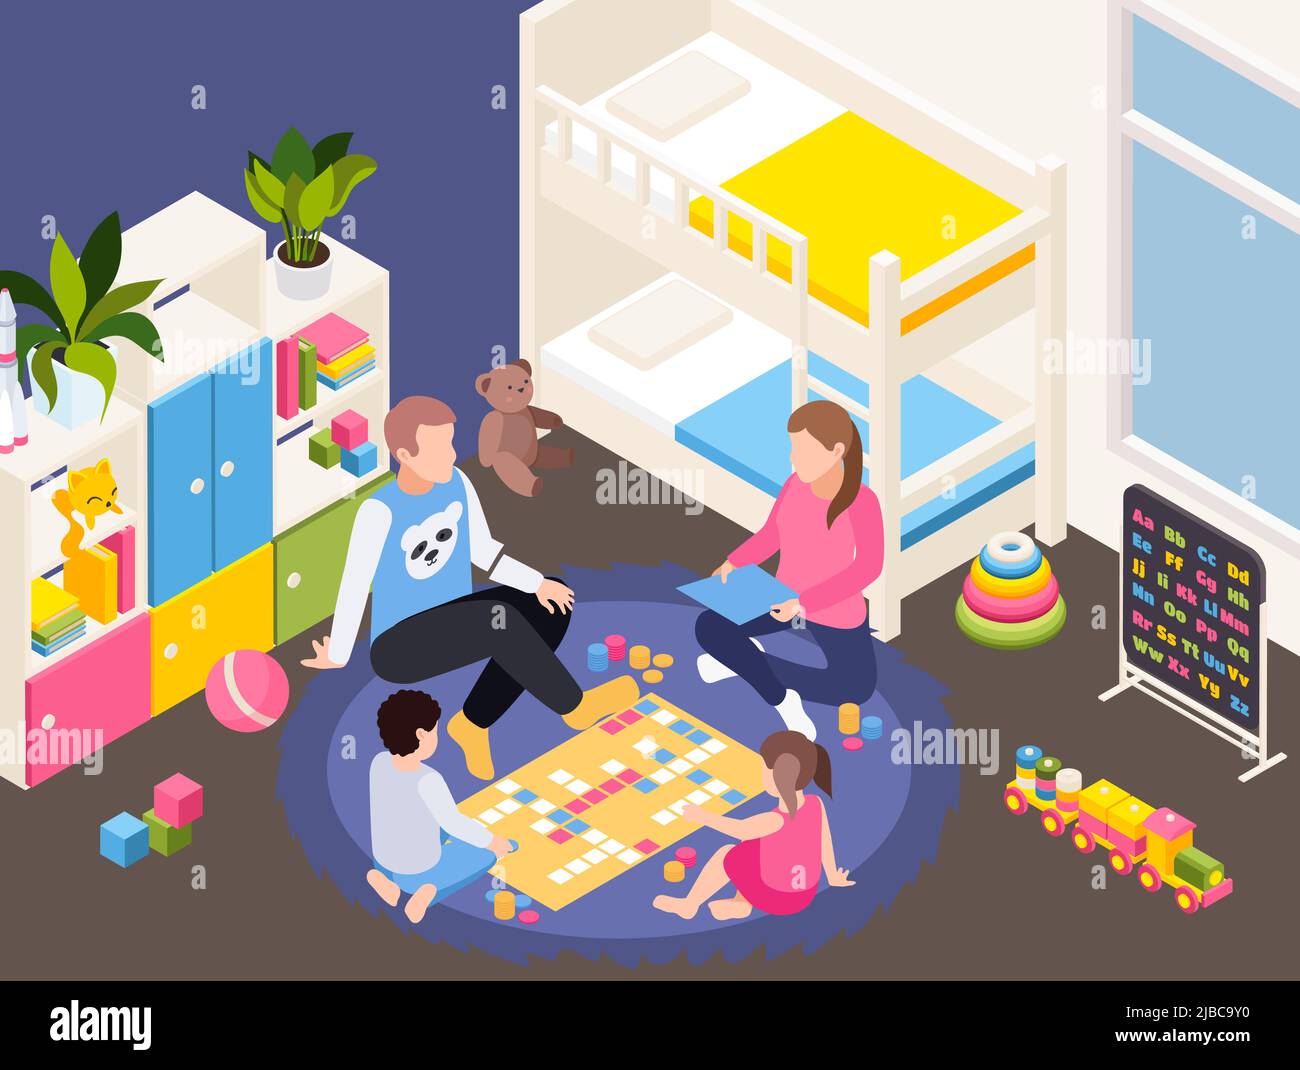 Haushalt Quarantäne Isolation isometrische Zusammensetzung mit Familie zu Hause bleiben Spielen mit Kindern im Kinderzimmer Vektor-Illustration Stock Vektor